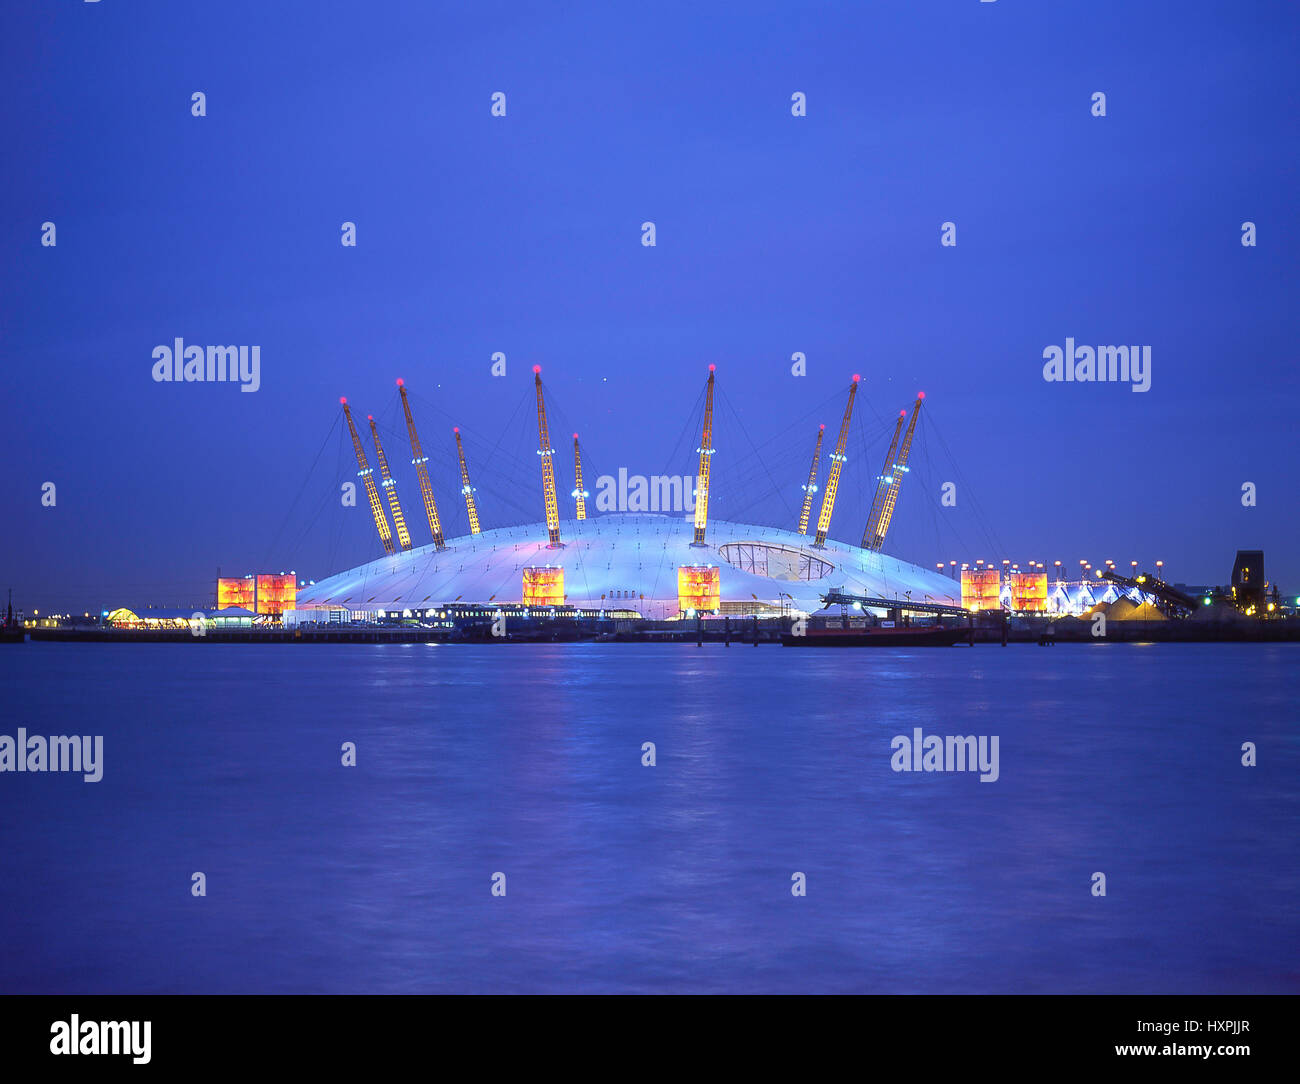 L'O2 Arena à travers Tamise au crépuscule, le Royal Borough de Greenwich, Greater London, Angleterre, Royaume-Uni Banque D'Images